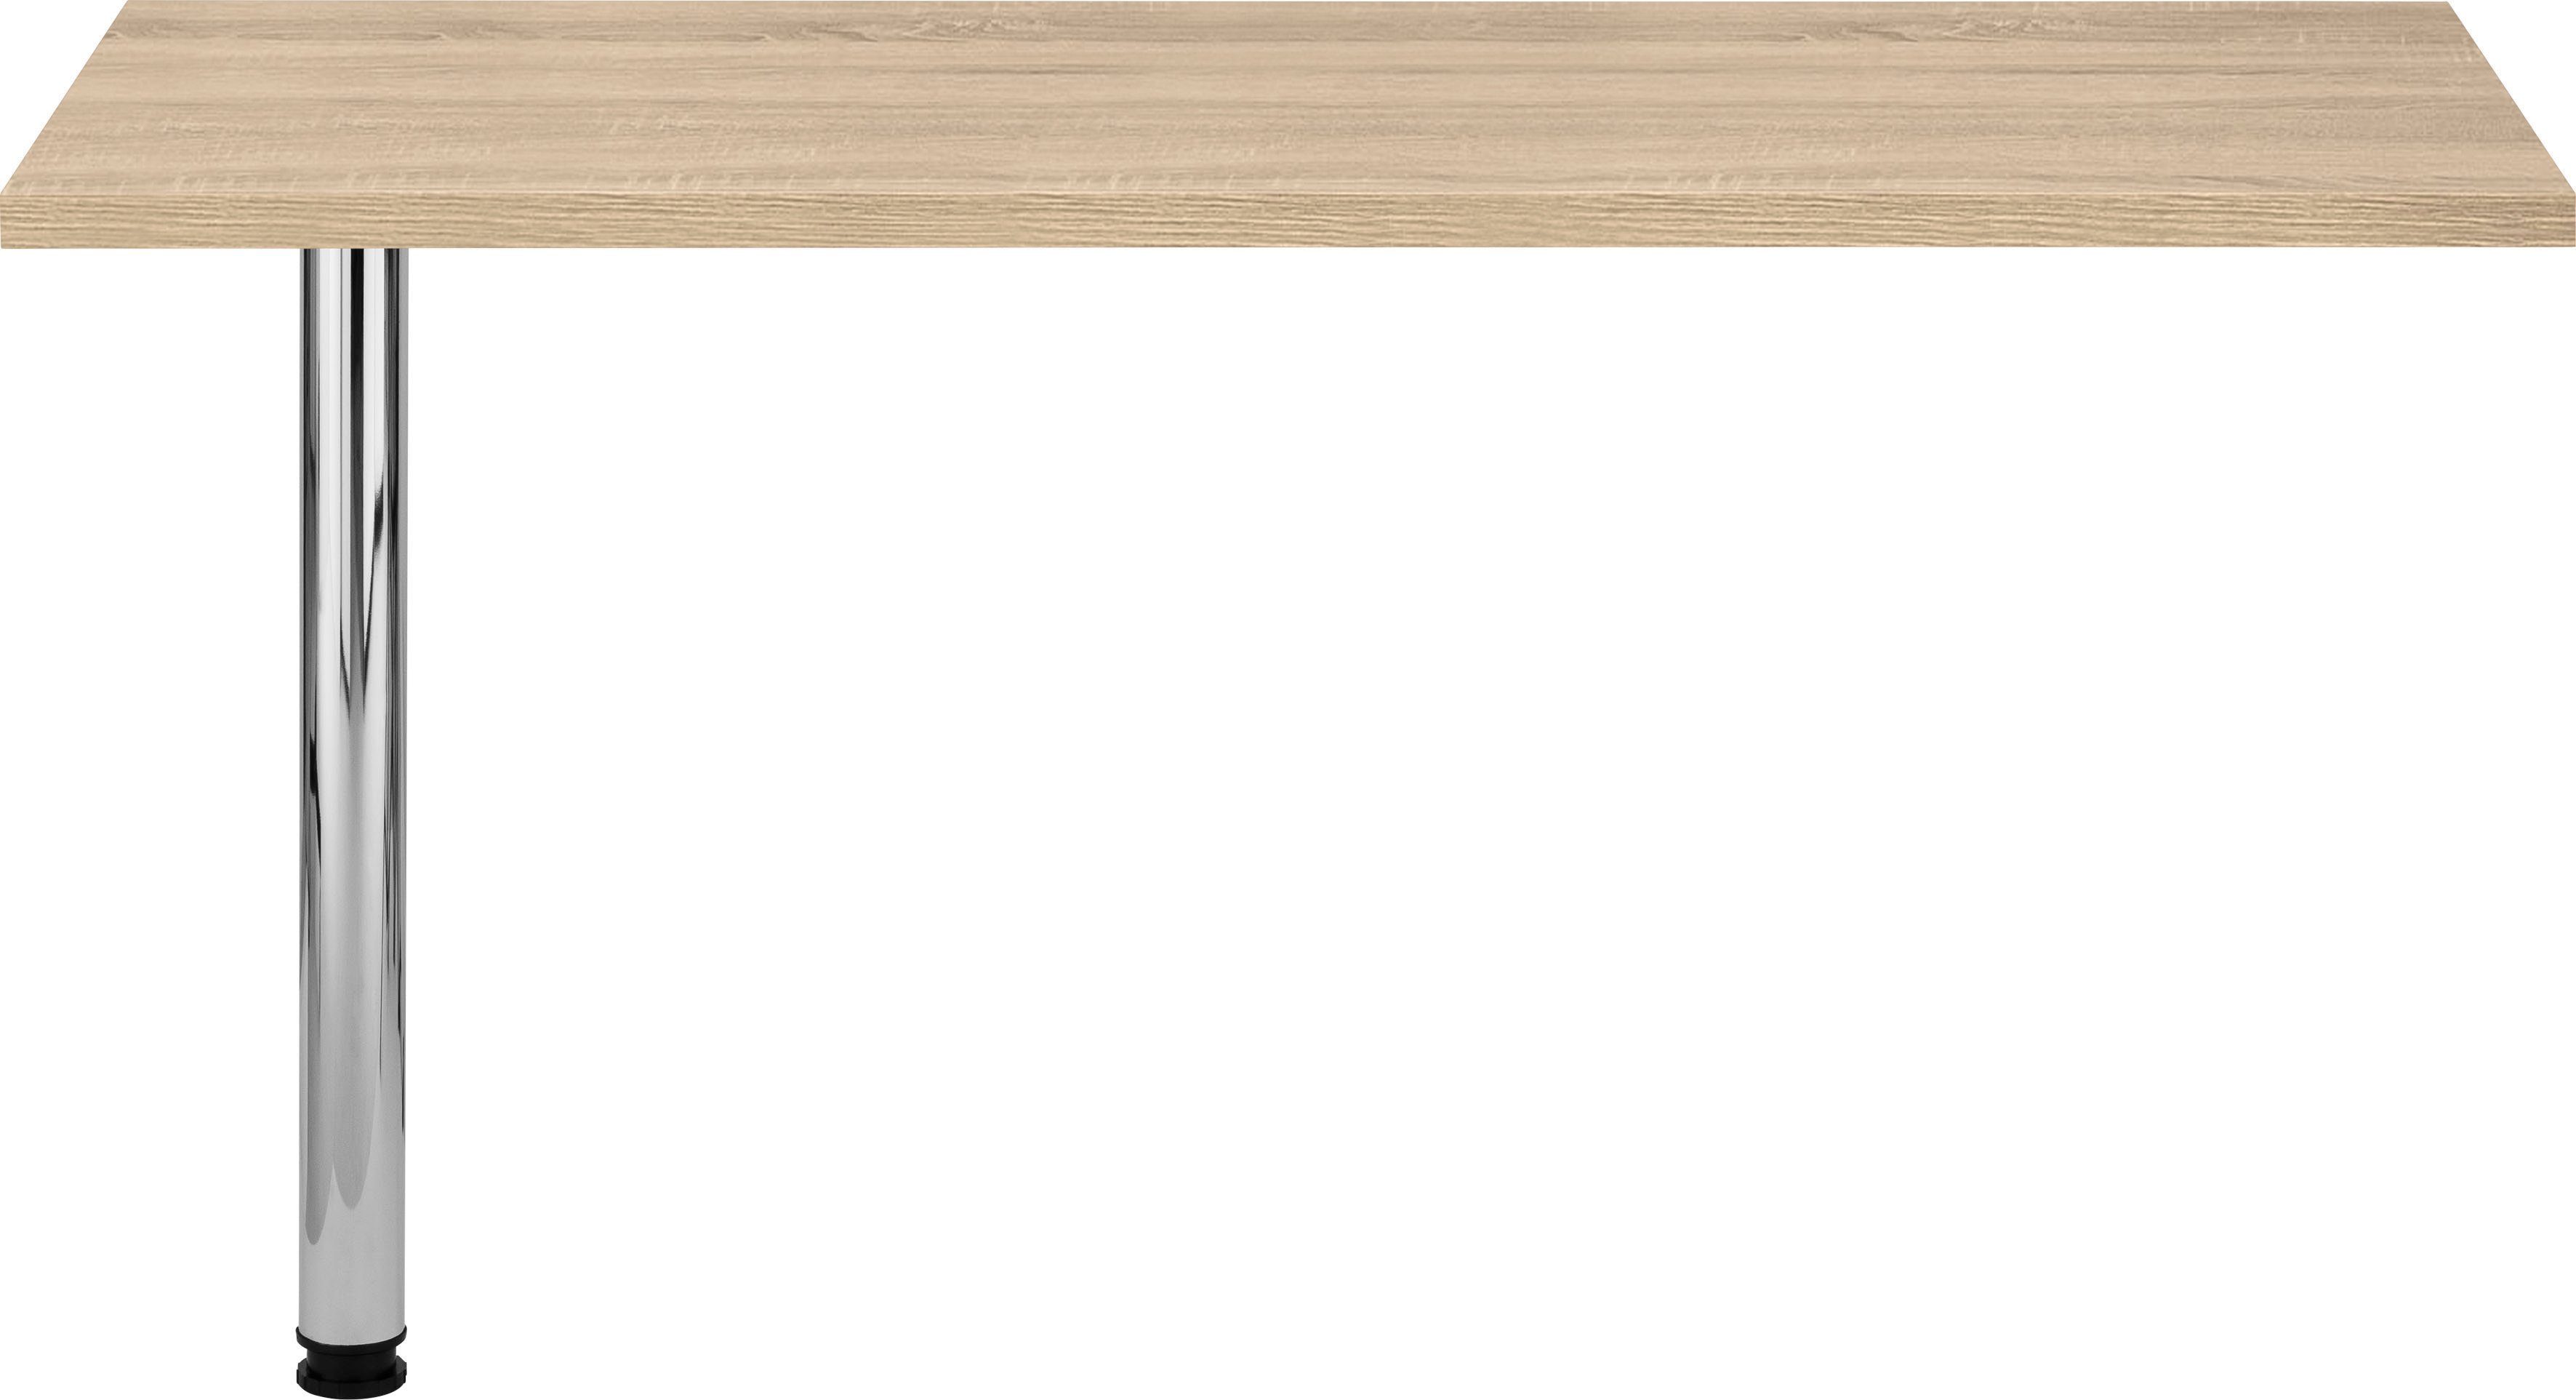 HELD MÖBEL Tresentisch Virginia, 138 cm breit, ideal für kleine Küchen eiche sonoma